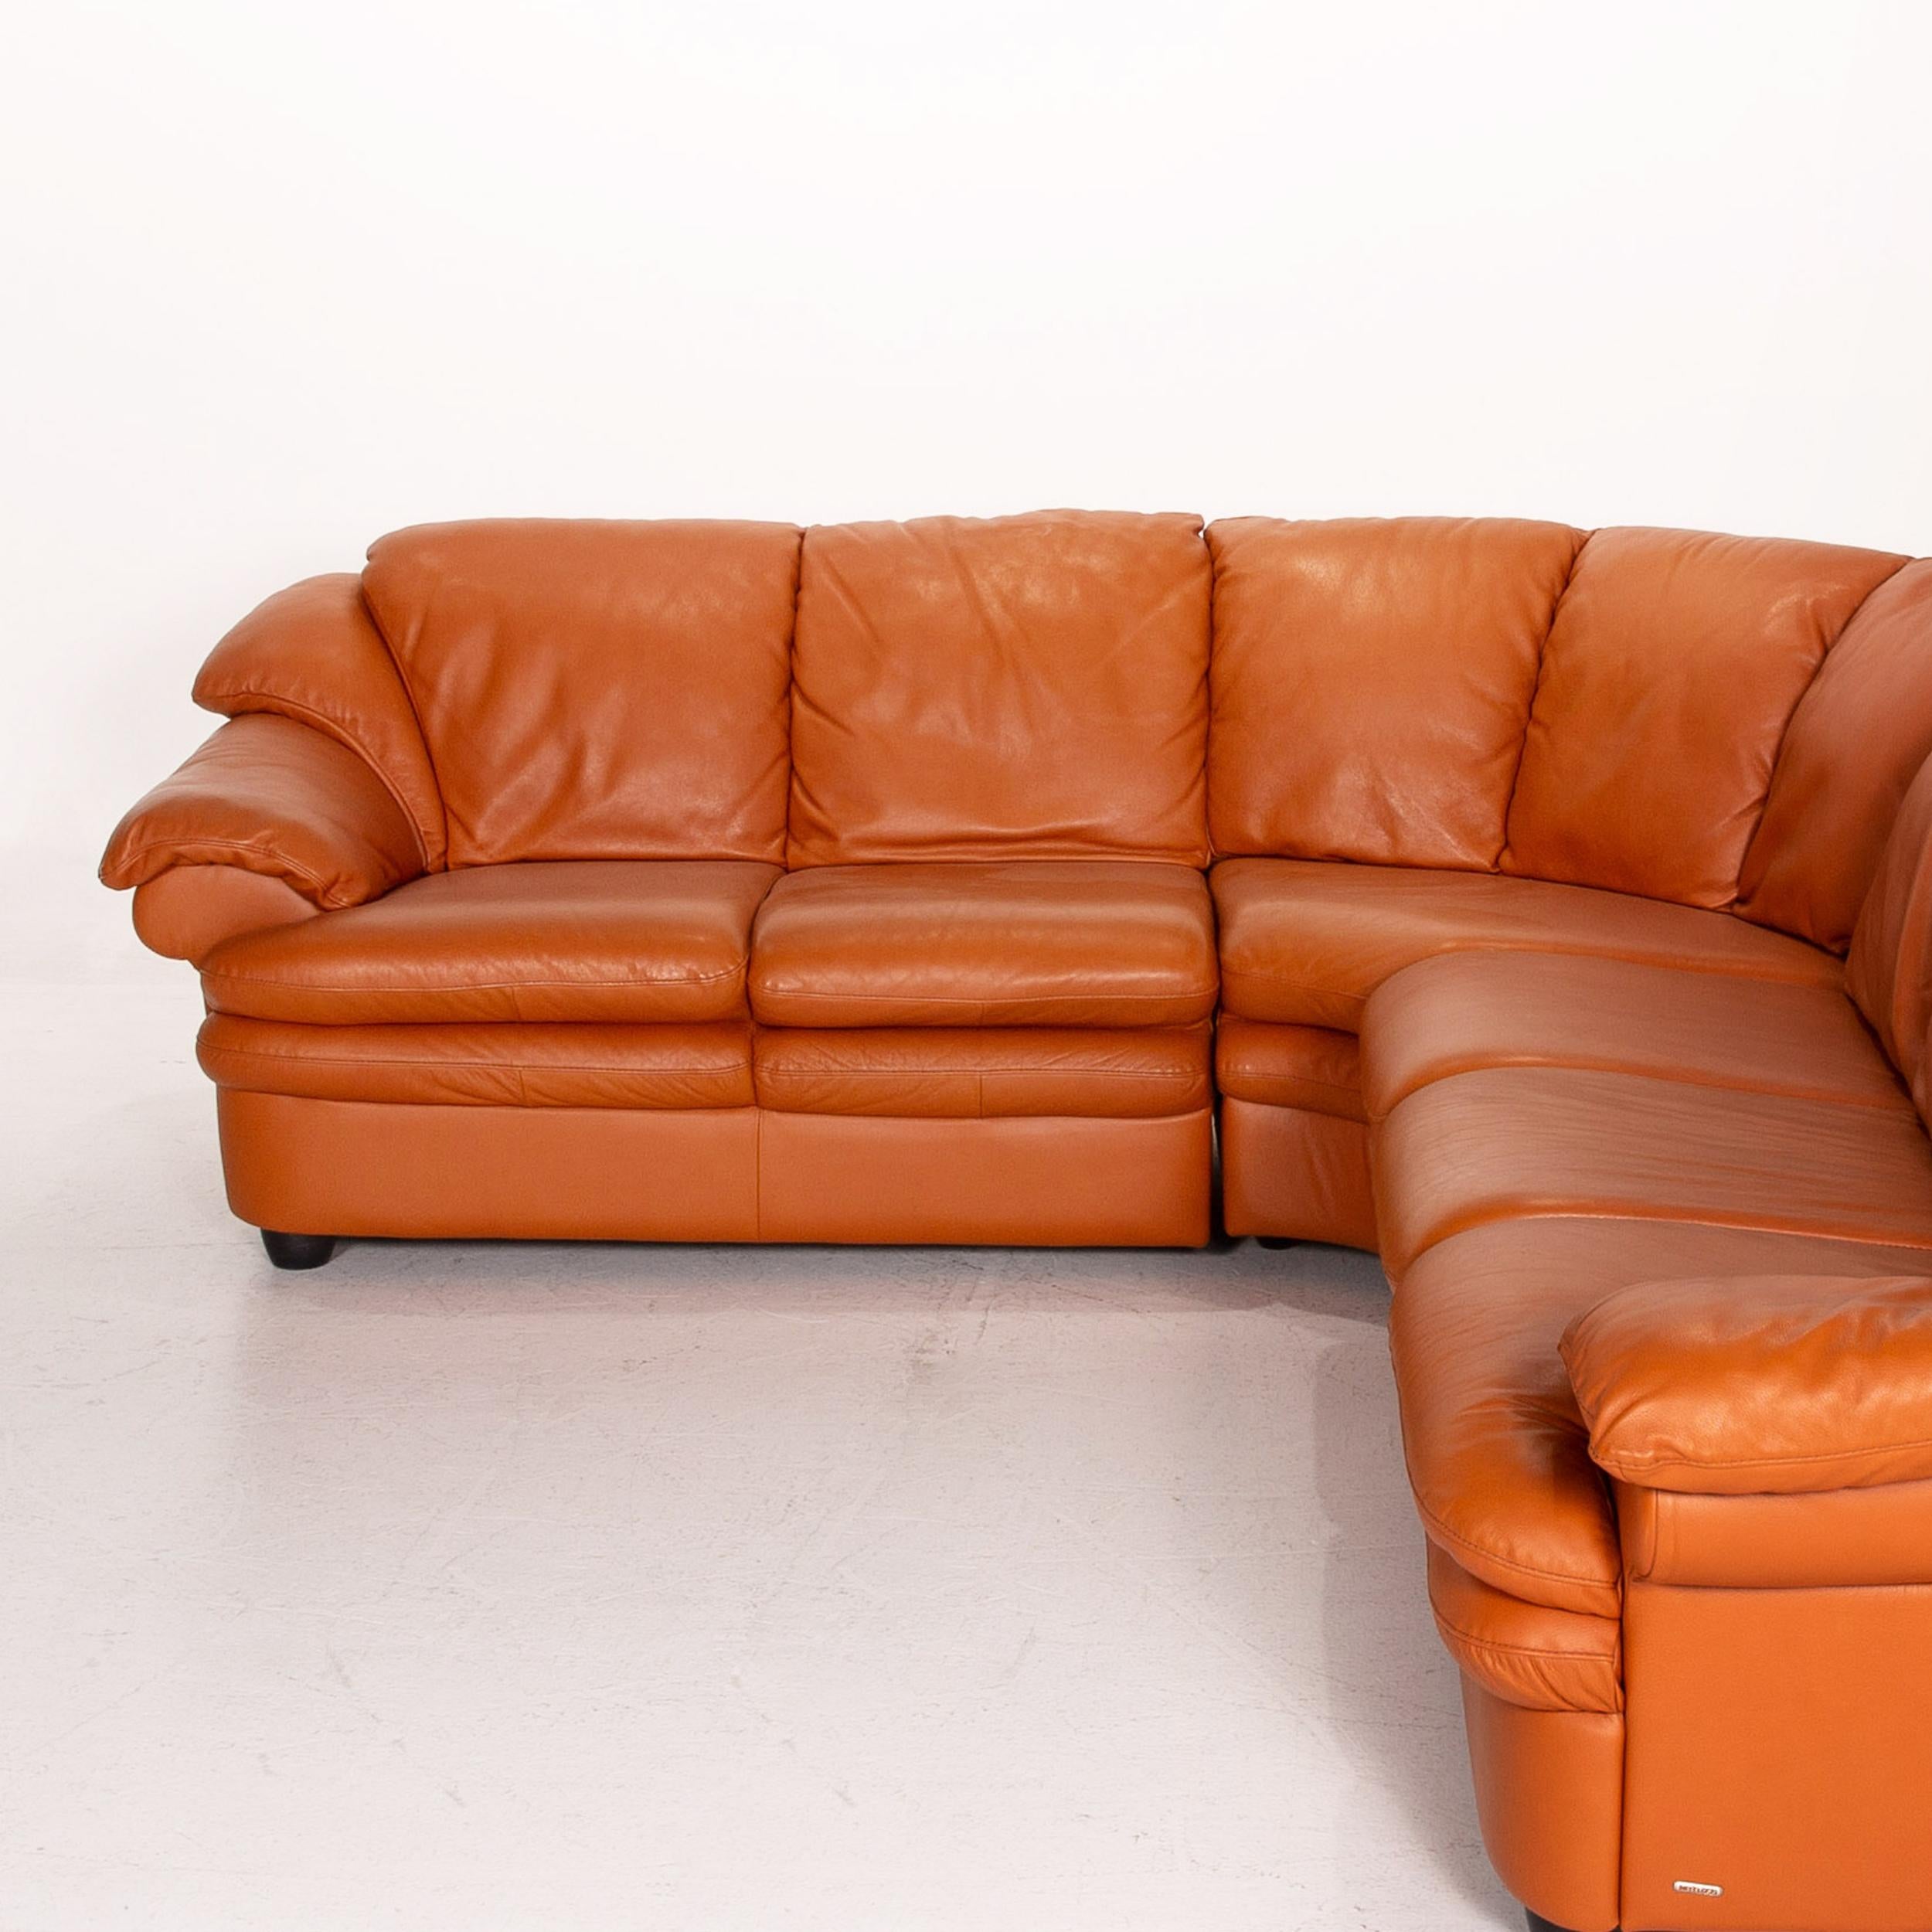 Contemporary Natuzzi Leather Corner Sofa Terracotta Orange Sofa Couch For Sale